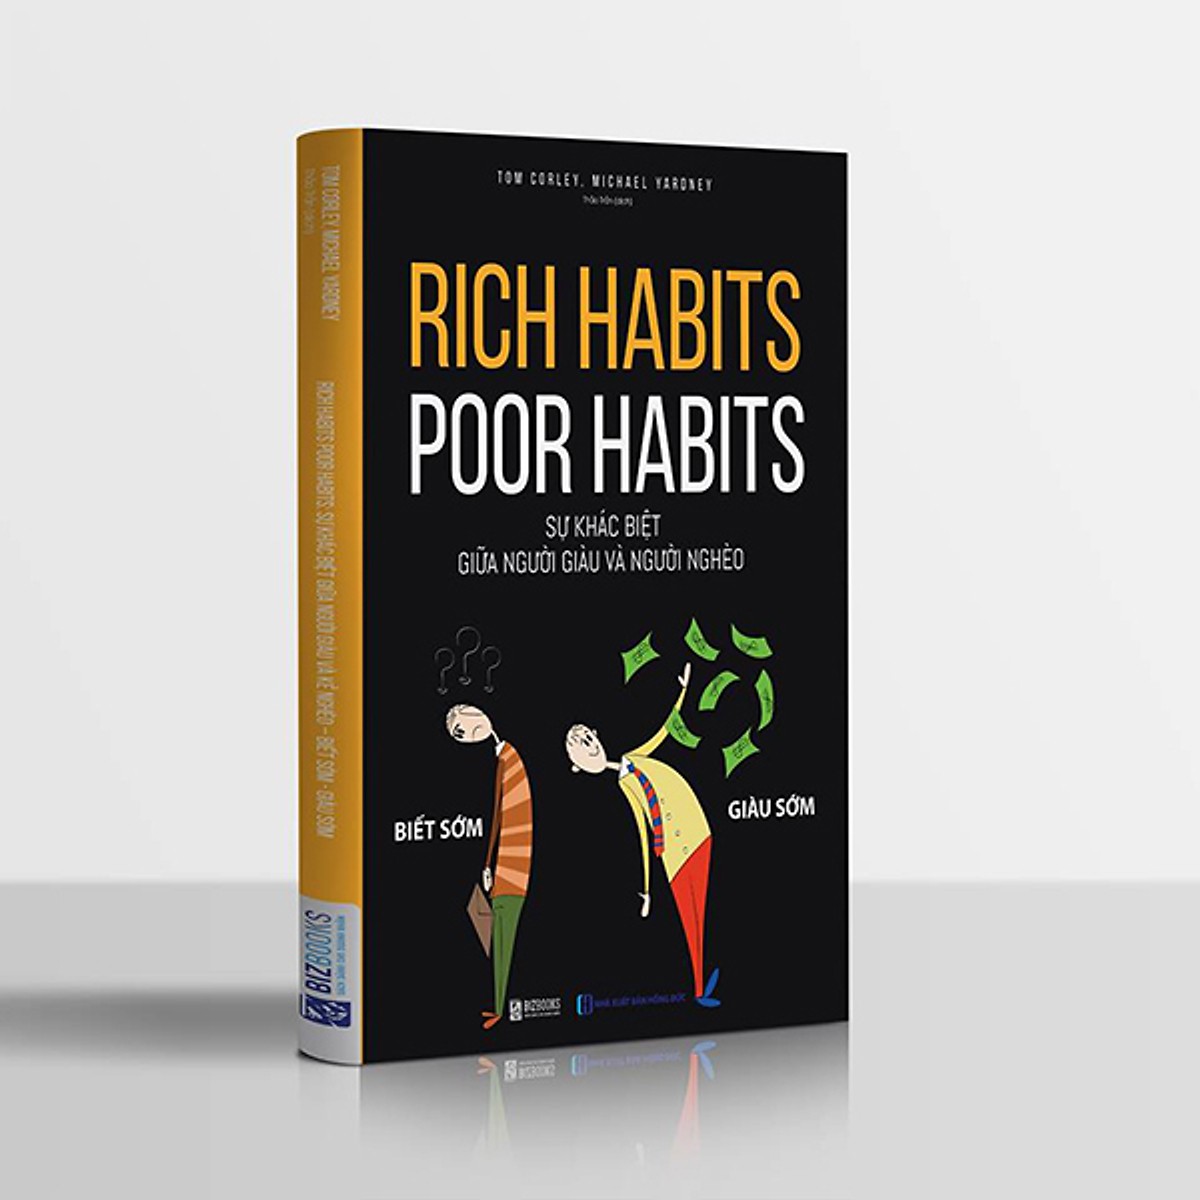 Rich habits, poor habits: Sự khác biệt giữa người giàu và người nghèo (Tặng Bookmark độc đáo CR)